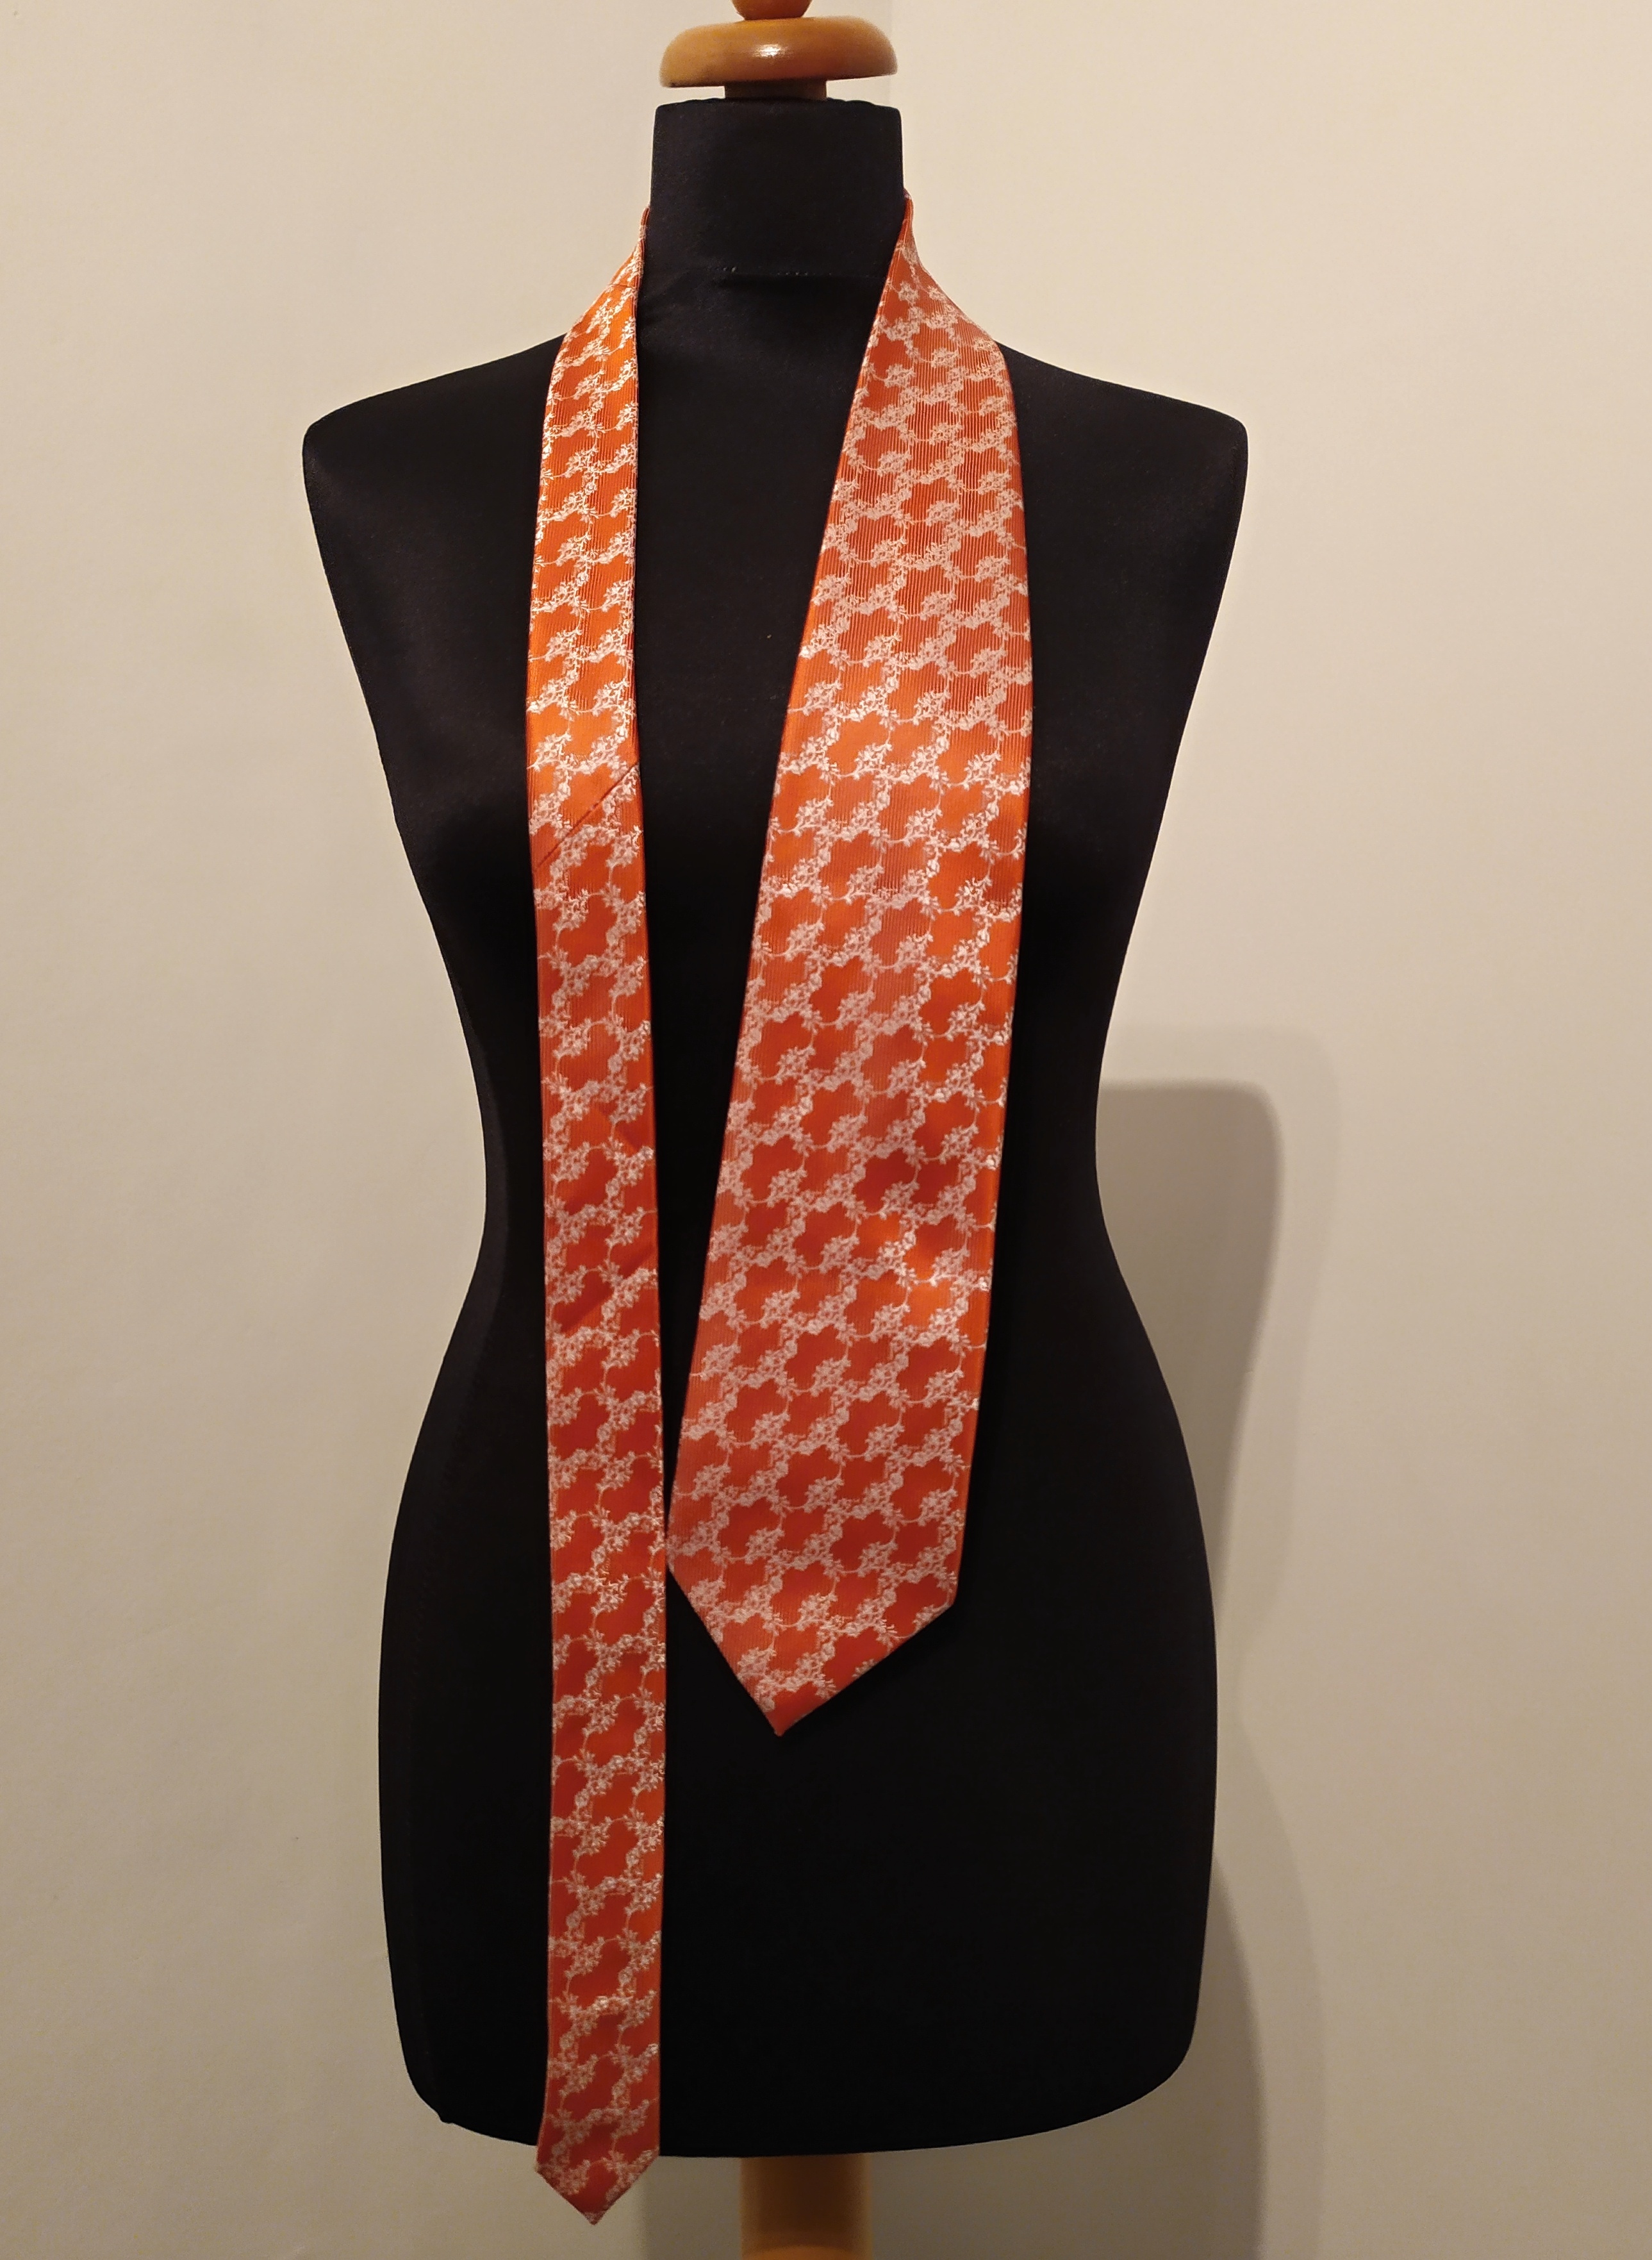 Pánská kravata oranžová